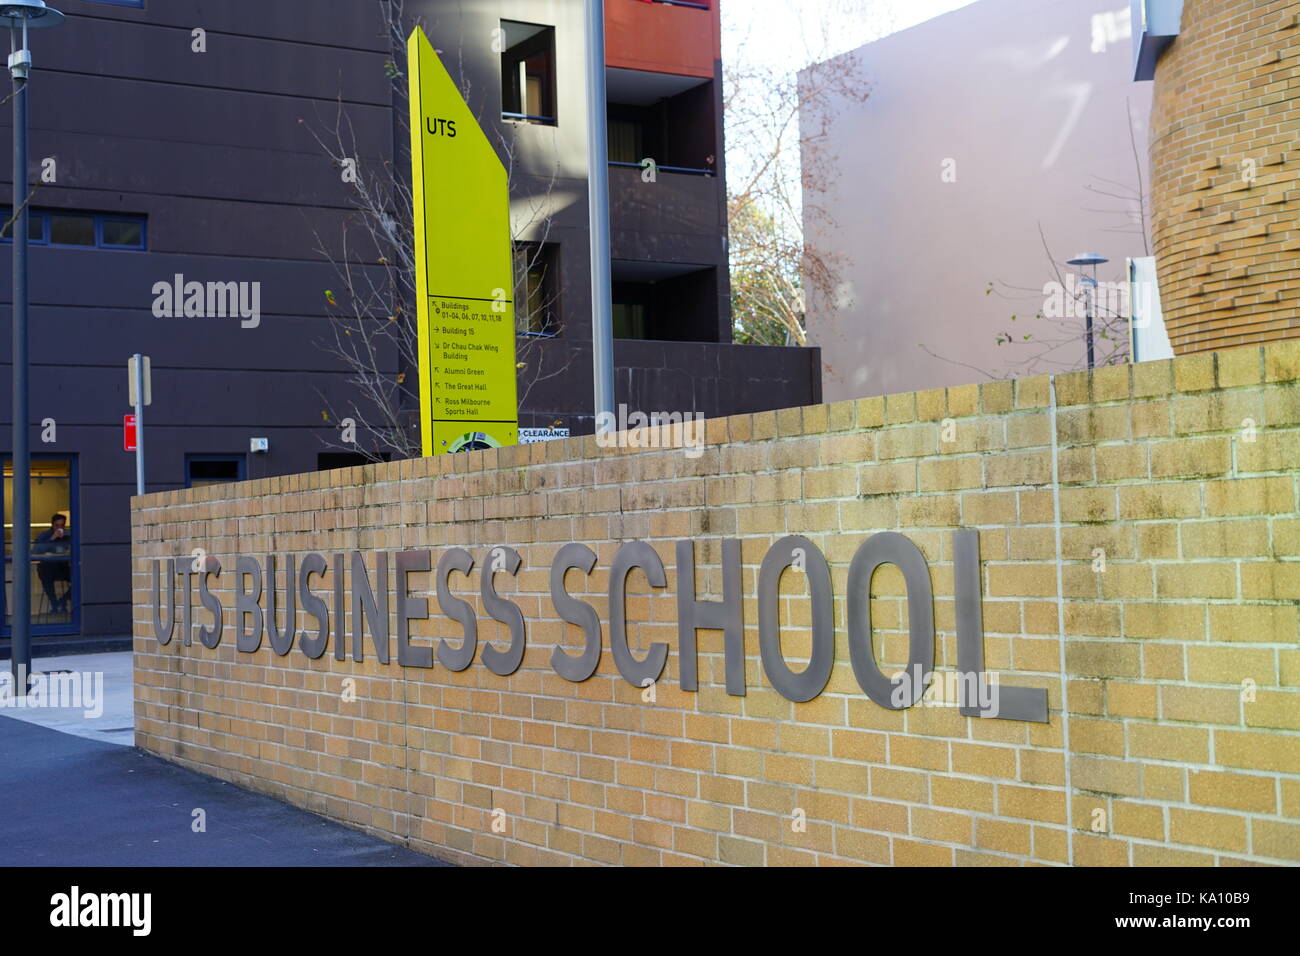 Vista del Dr. chau chak wing edificio en la escuela de negocios de la Universidad de Tecnología de Sydney (UTS). Fue diseñado por el arquitecto Frank Gehry. Foto de stock